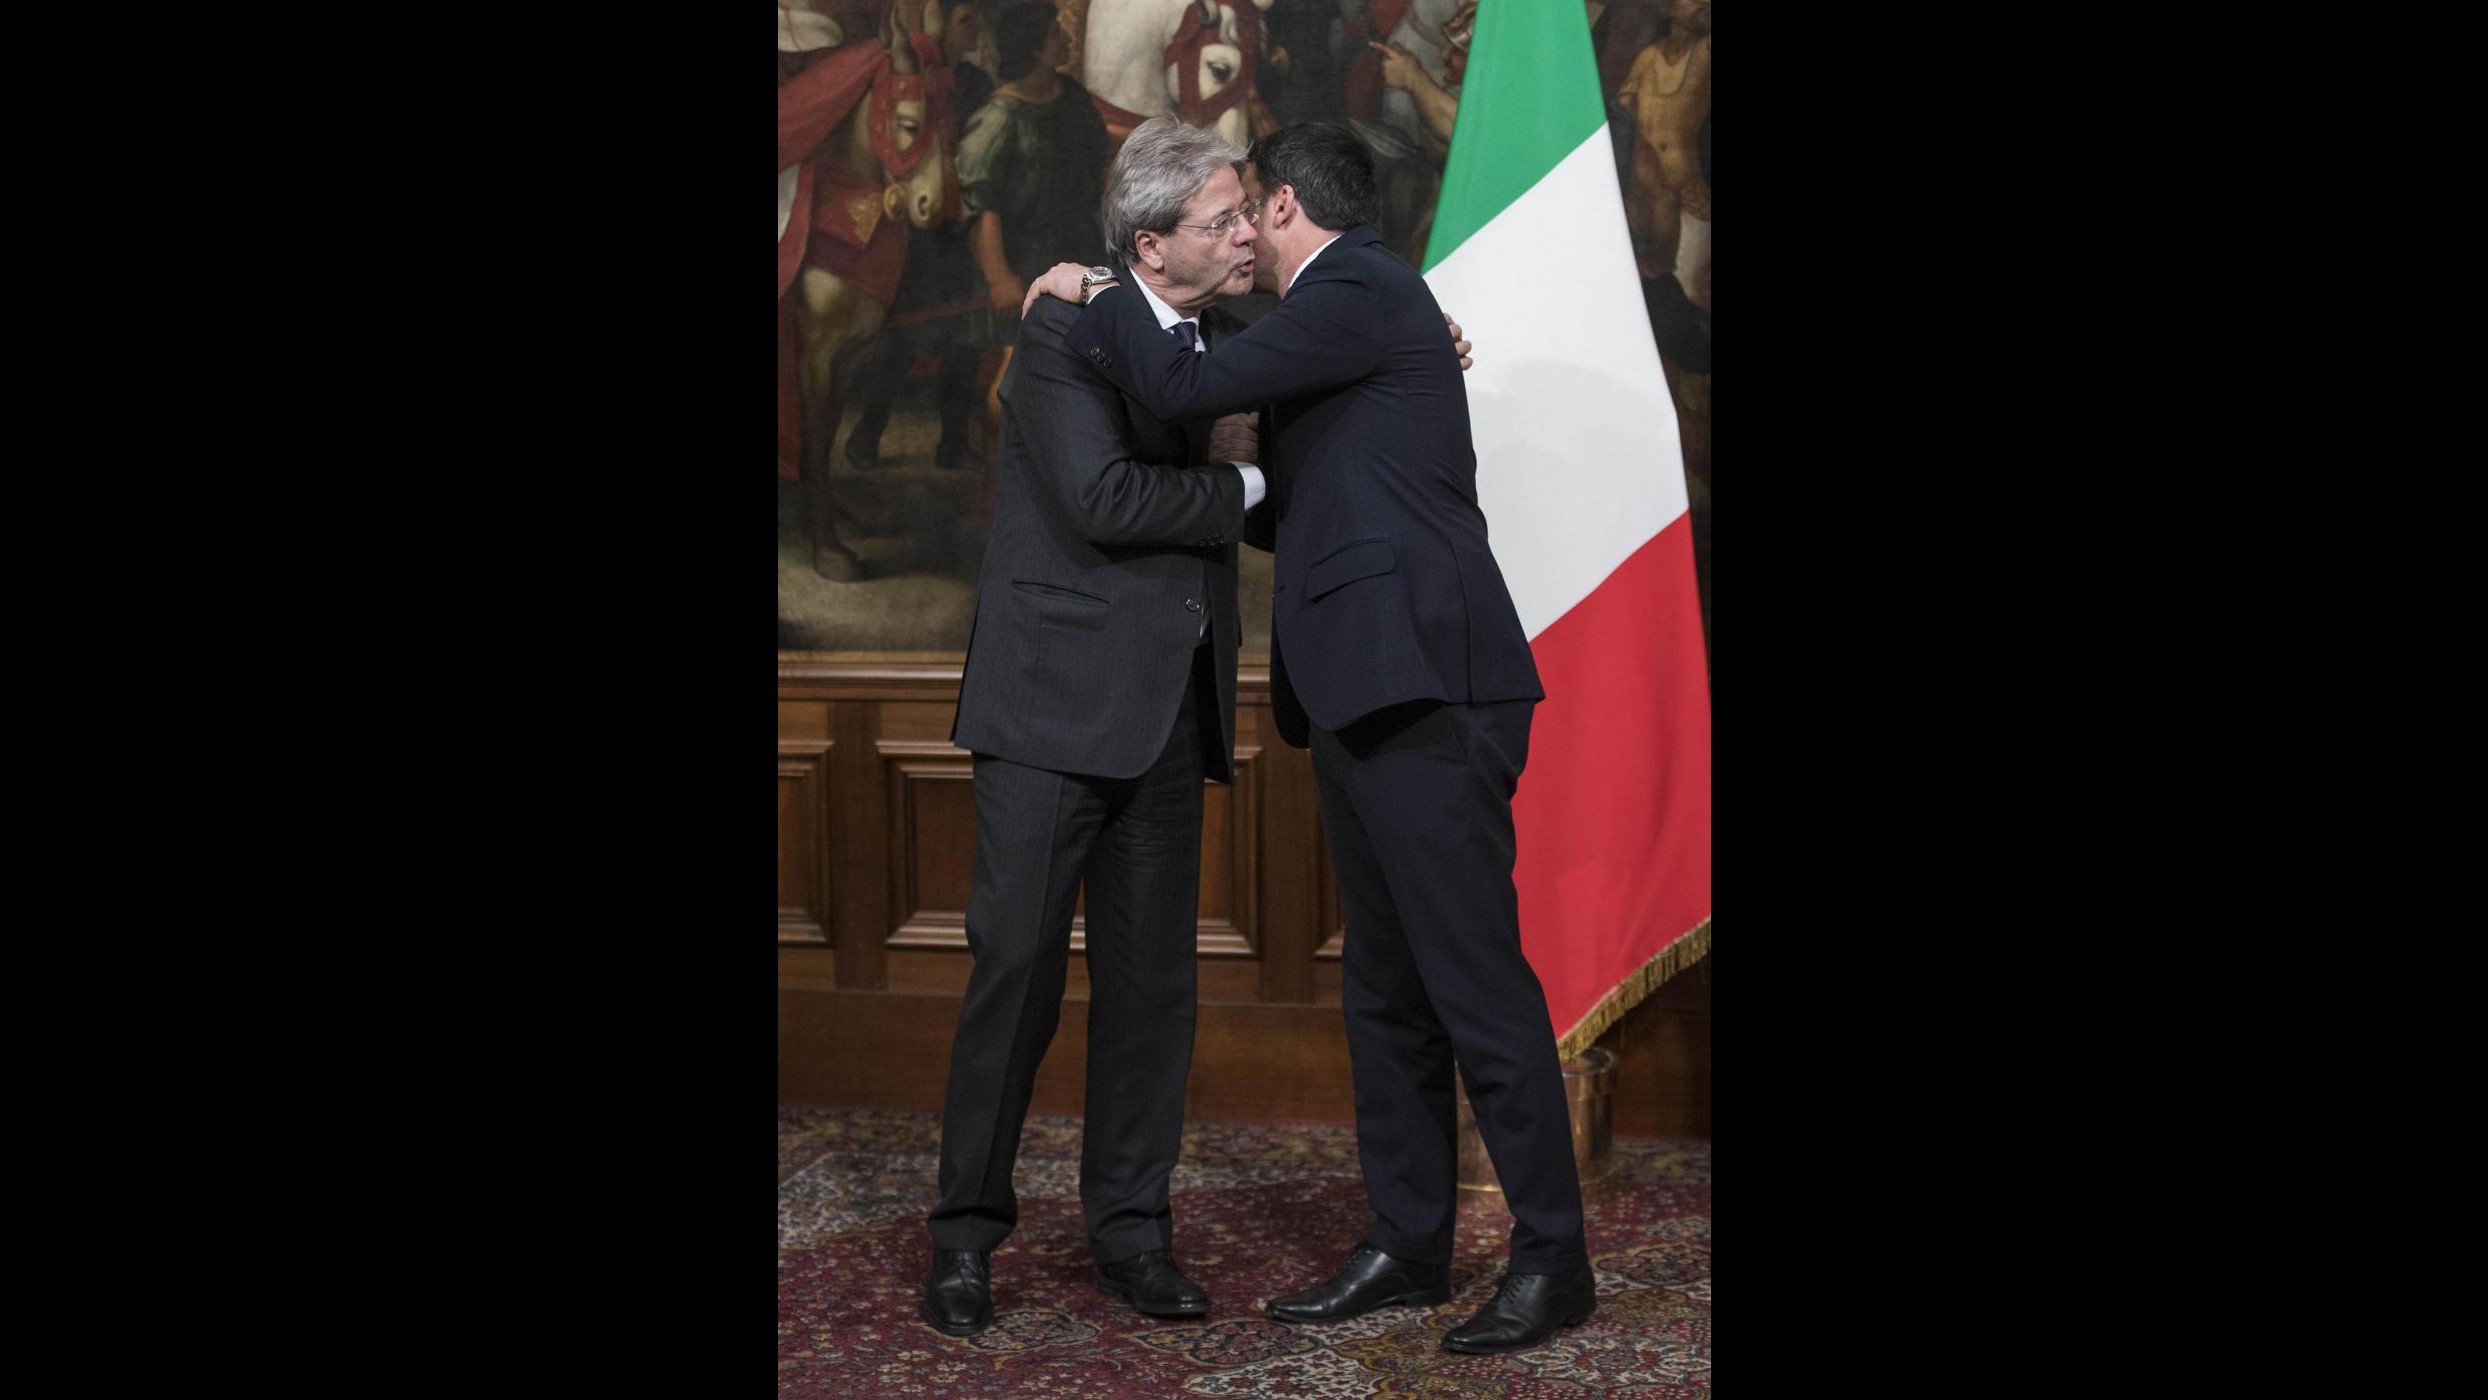 FOTO Passaggio di consegne tra Renzi e Gentiloni